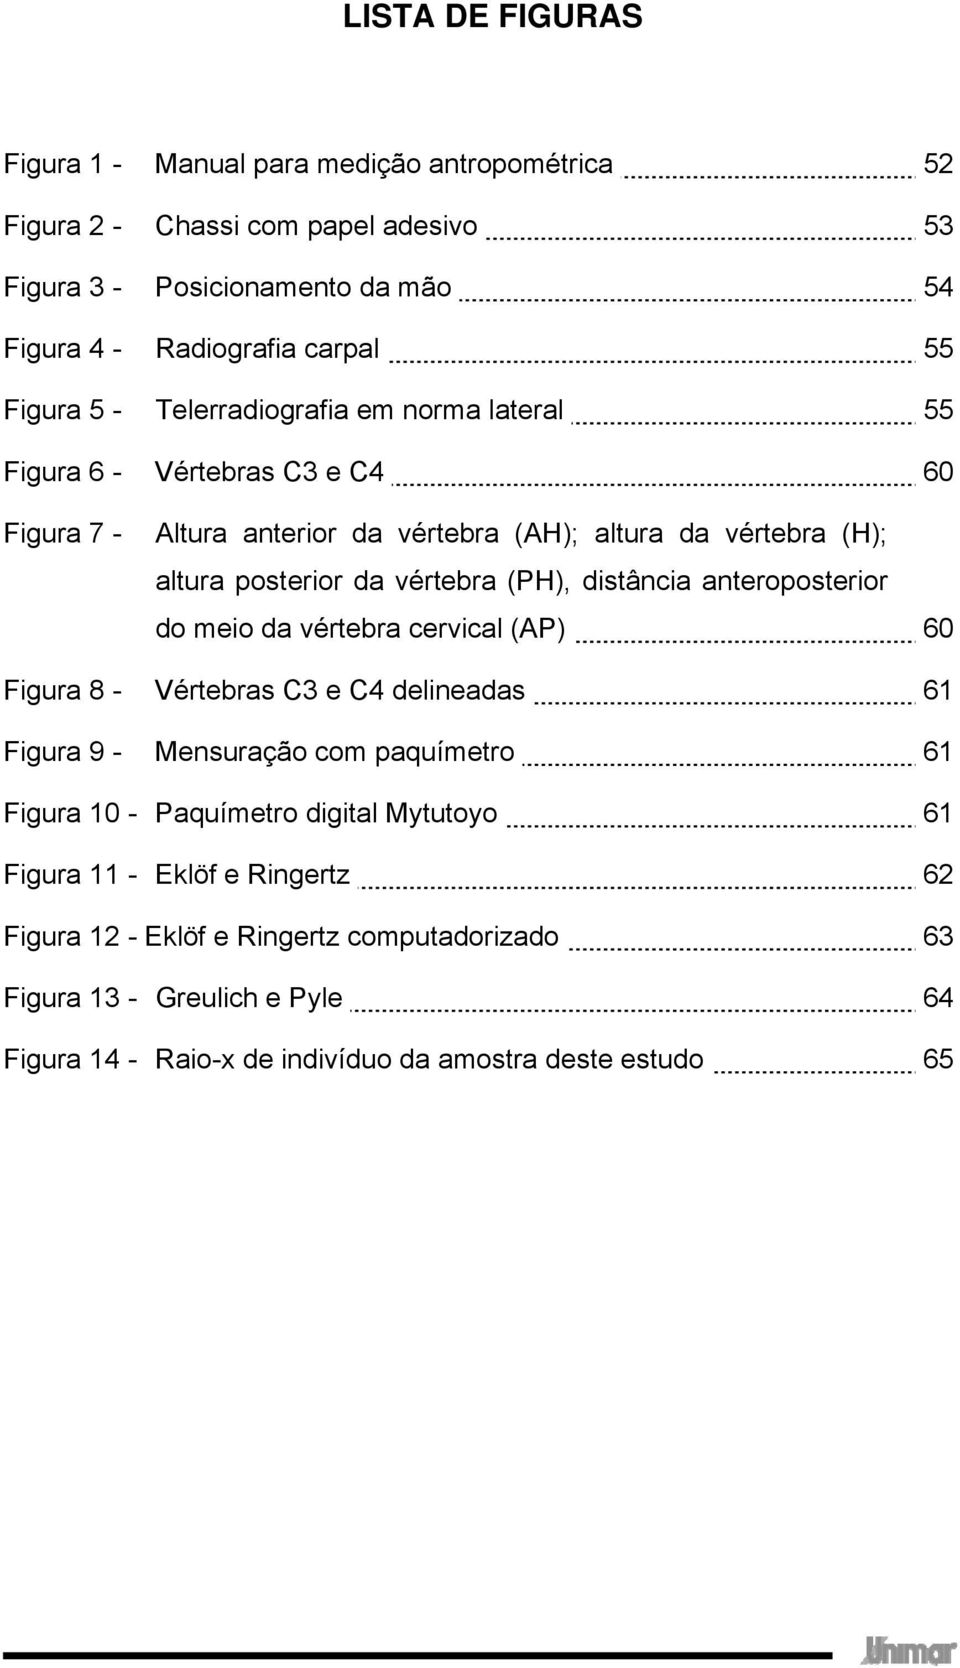 (PH), distância anteroposterior do meio da vértebra cervical (AP) 60 Figura 8 - Vértebras C3 e C4 delineadas 61 Figura 9 - Mensuração com paquímetro 61 Figura 10 - Paquímetro